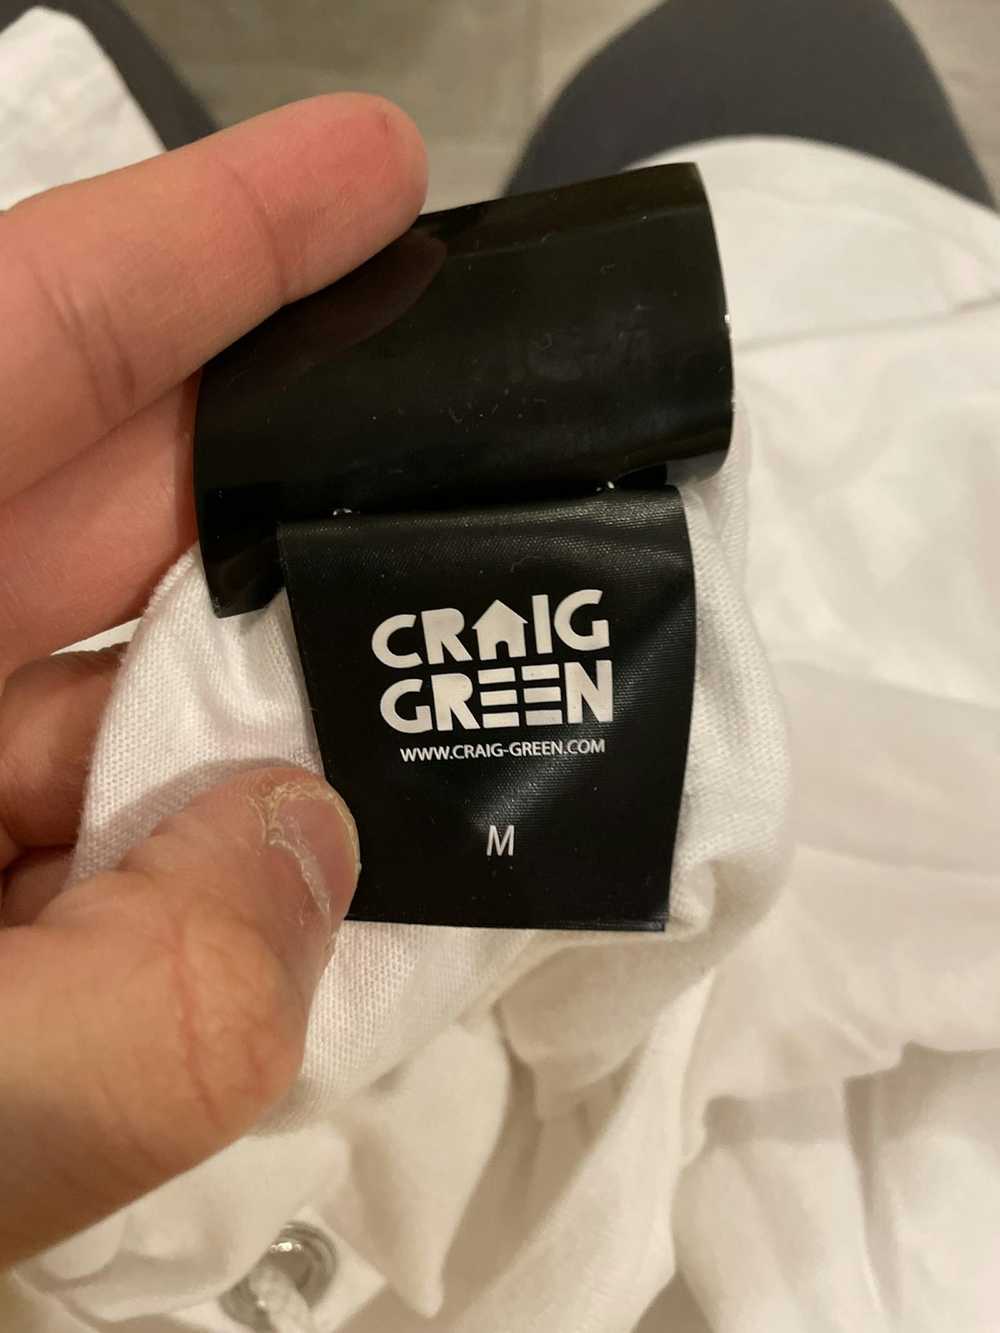 Craig Green Craig Green knot T-shirt - image 3